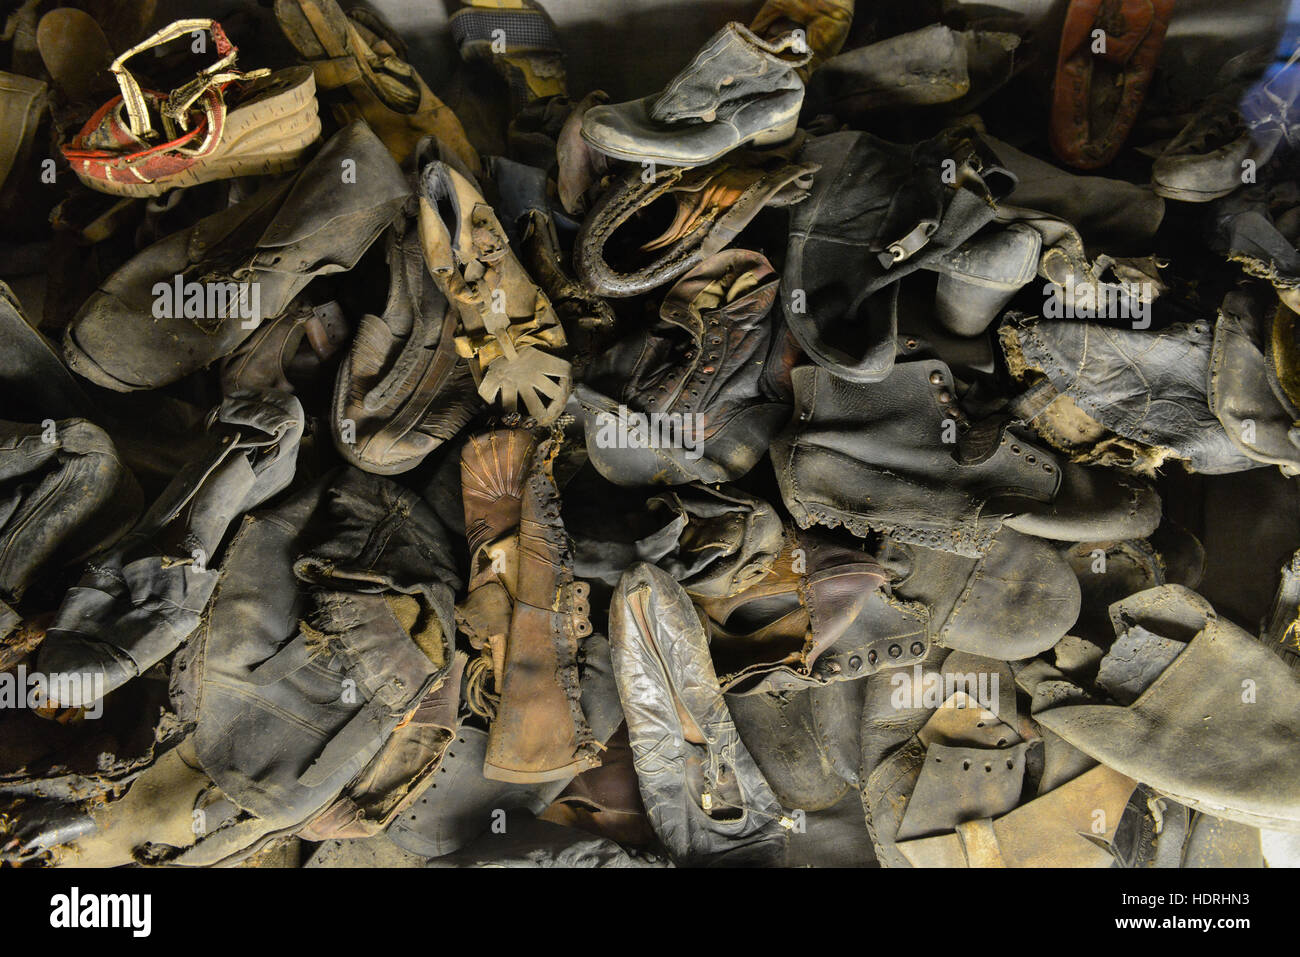 Schuhe, Ausstellung, Stammlager I, Konzentrationslager, Auschwitz-Birkenau, Auschwitz, Polen Stock Photo